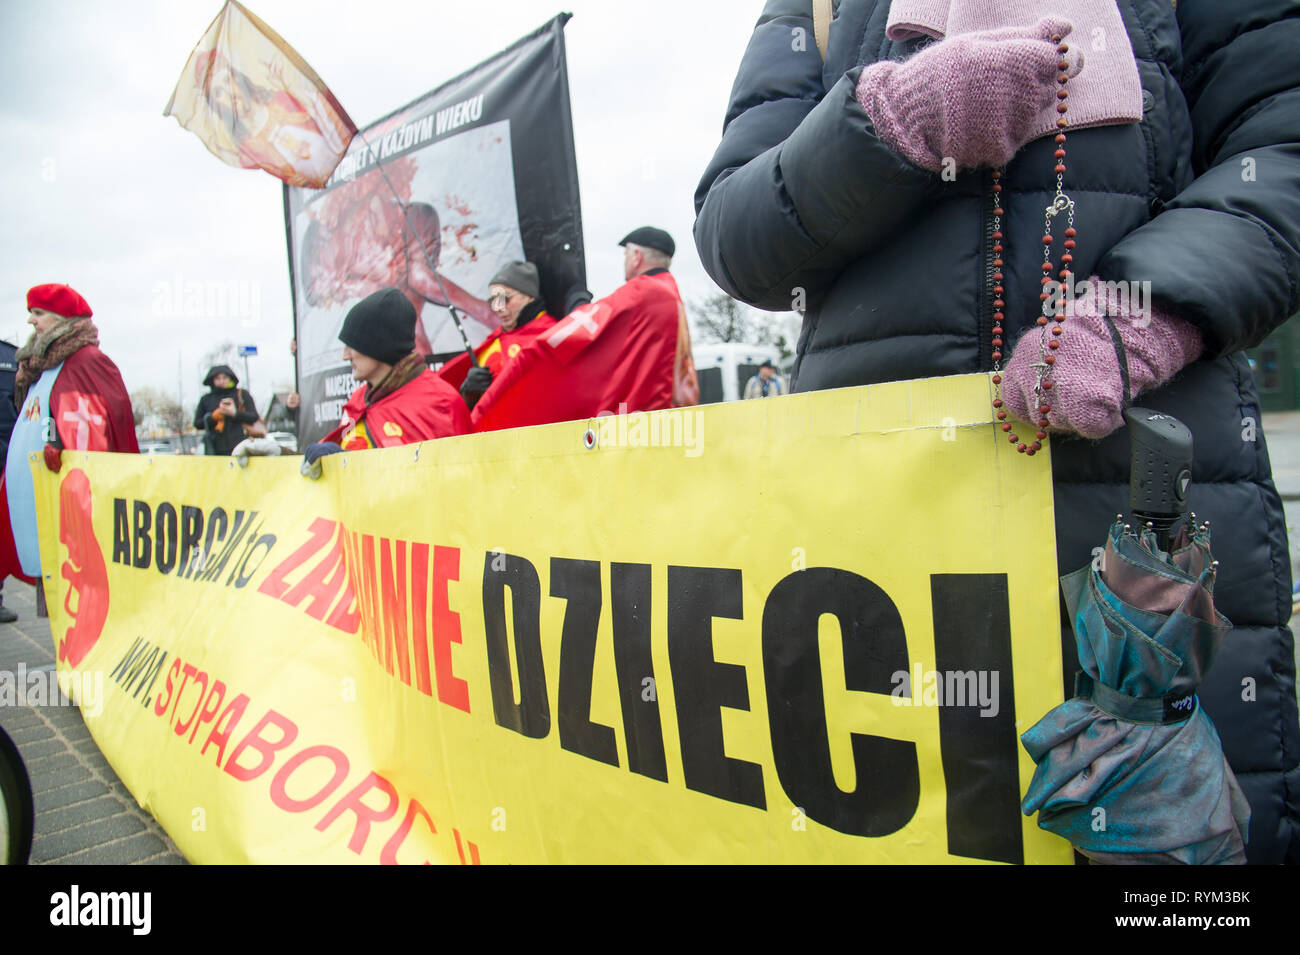 Anti abortion movement in Gdynia, Poland March 9th 2019 © Wojciech Strozyk / Alamy Stock Photo Stock Photo